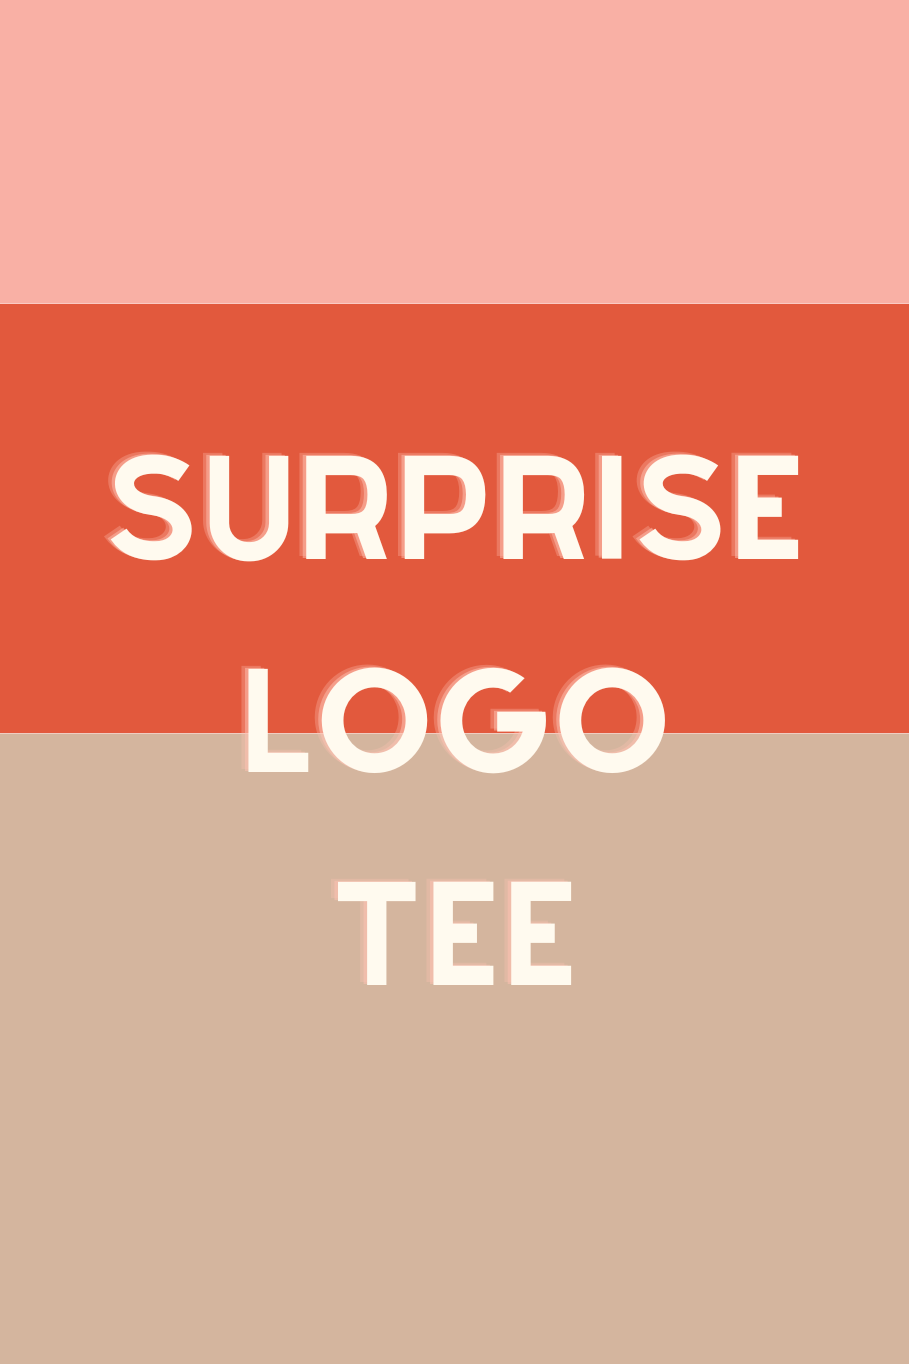 Surprise Logo Tee